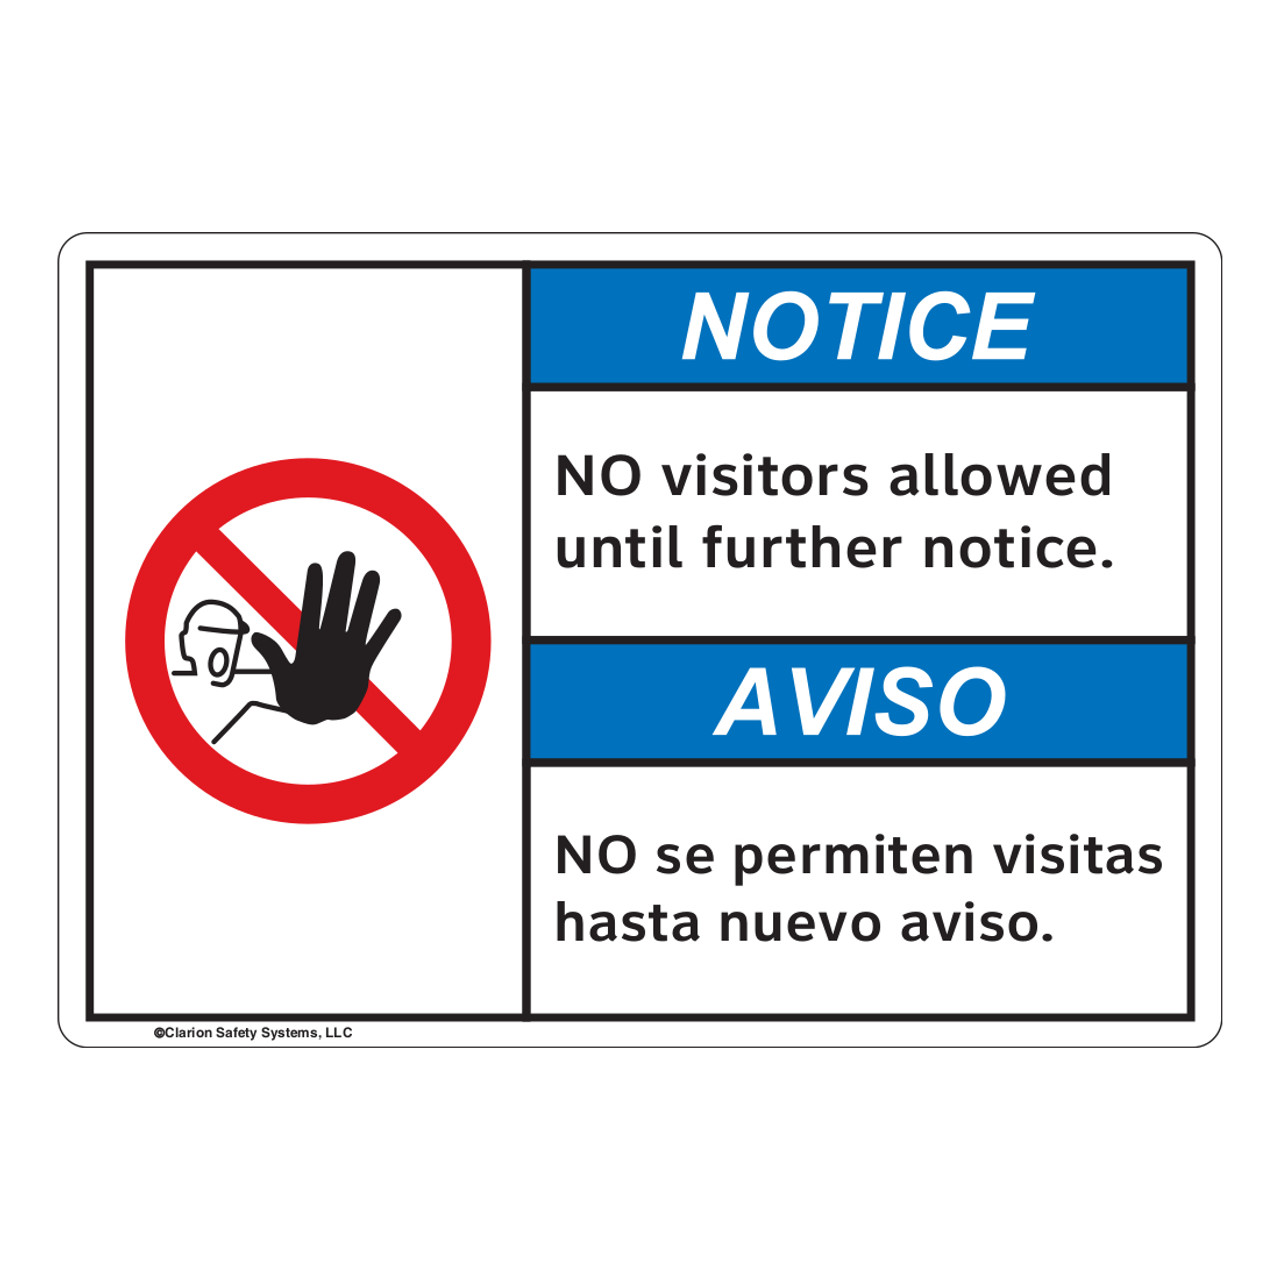 Warning signs: aprenda os avisos em inglês